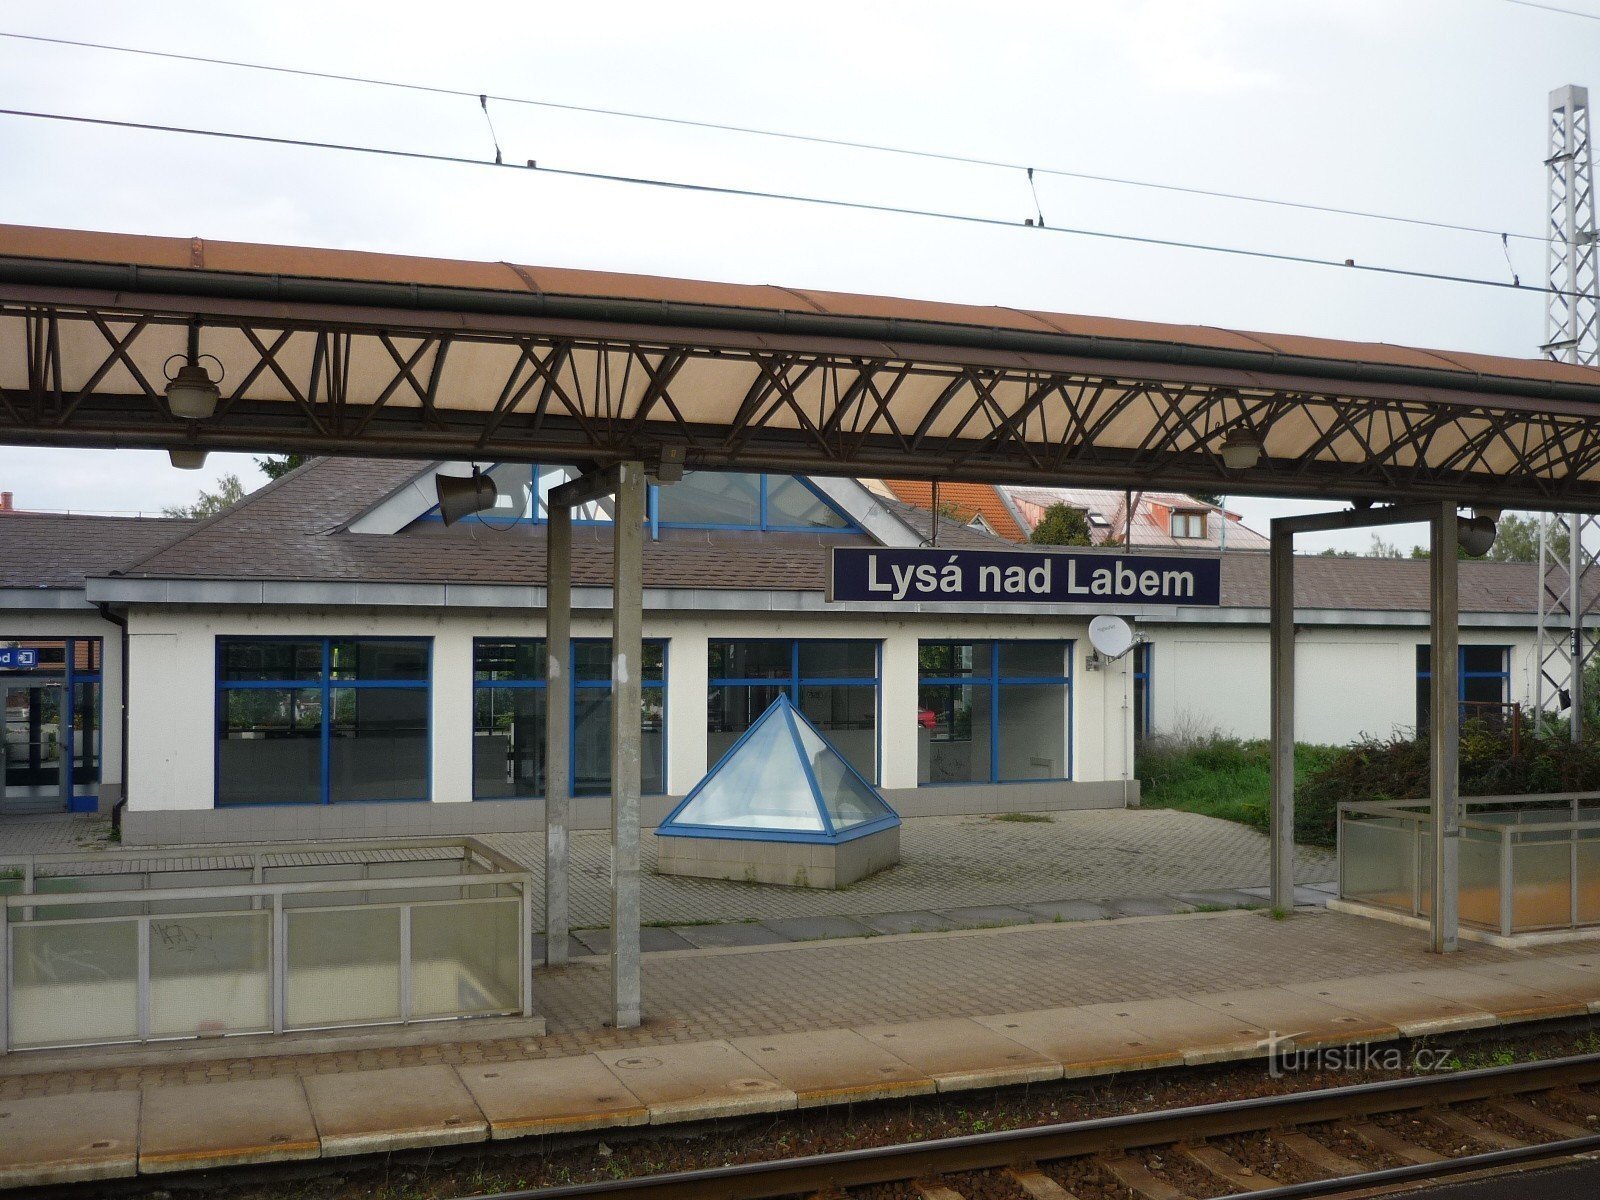 Dworzec kolejowy w Lysej nad Labem